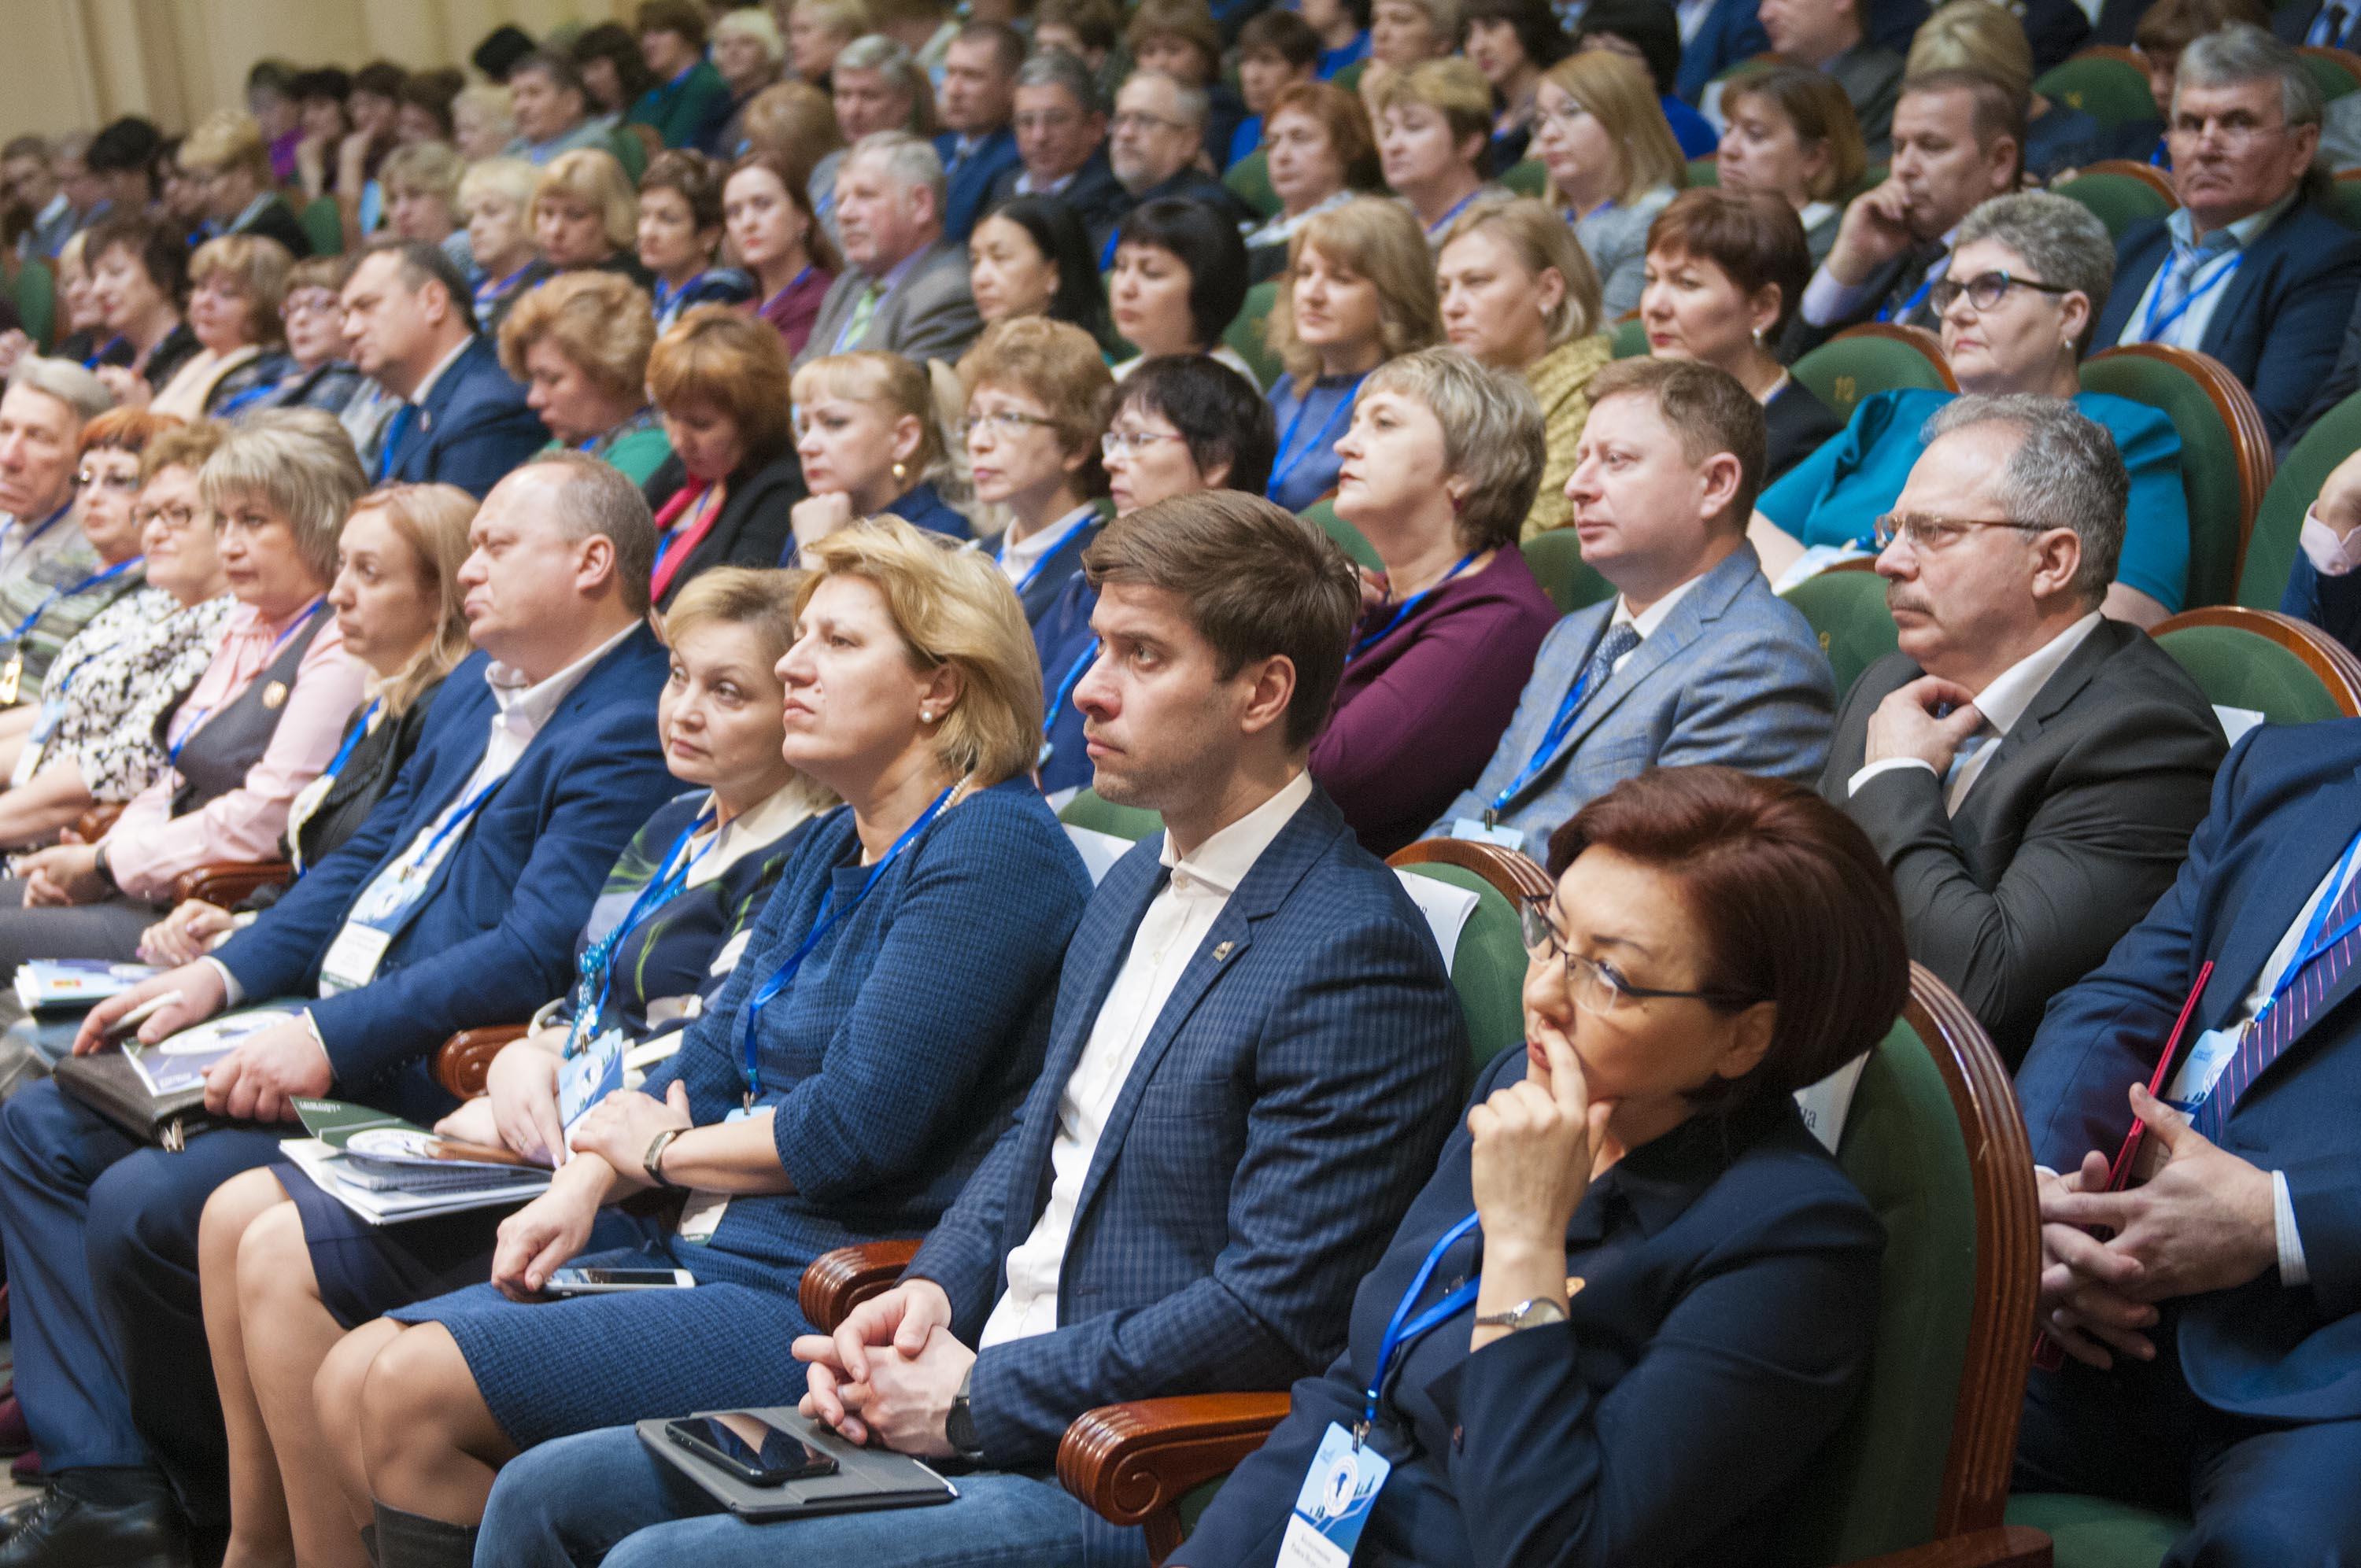 Открыта регистрация на II Всекузбасский съезд директоров школ, который состоится 27-28 мая в формате онлайн